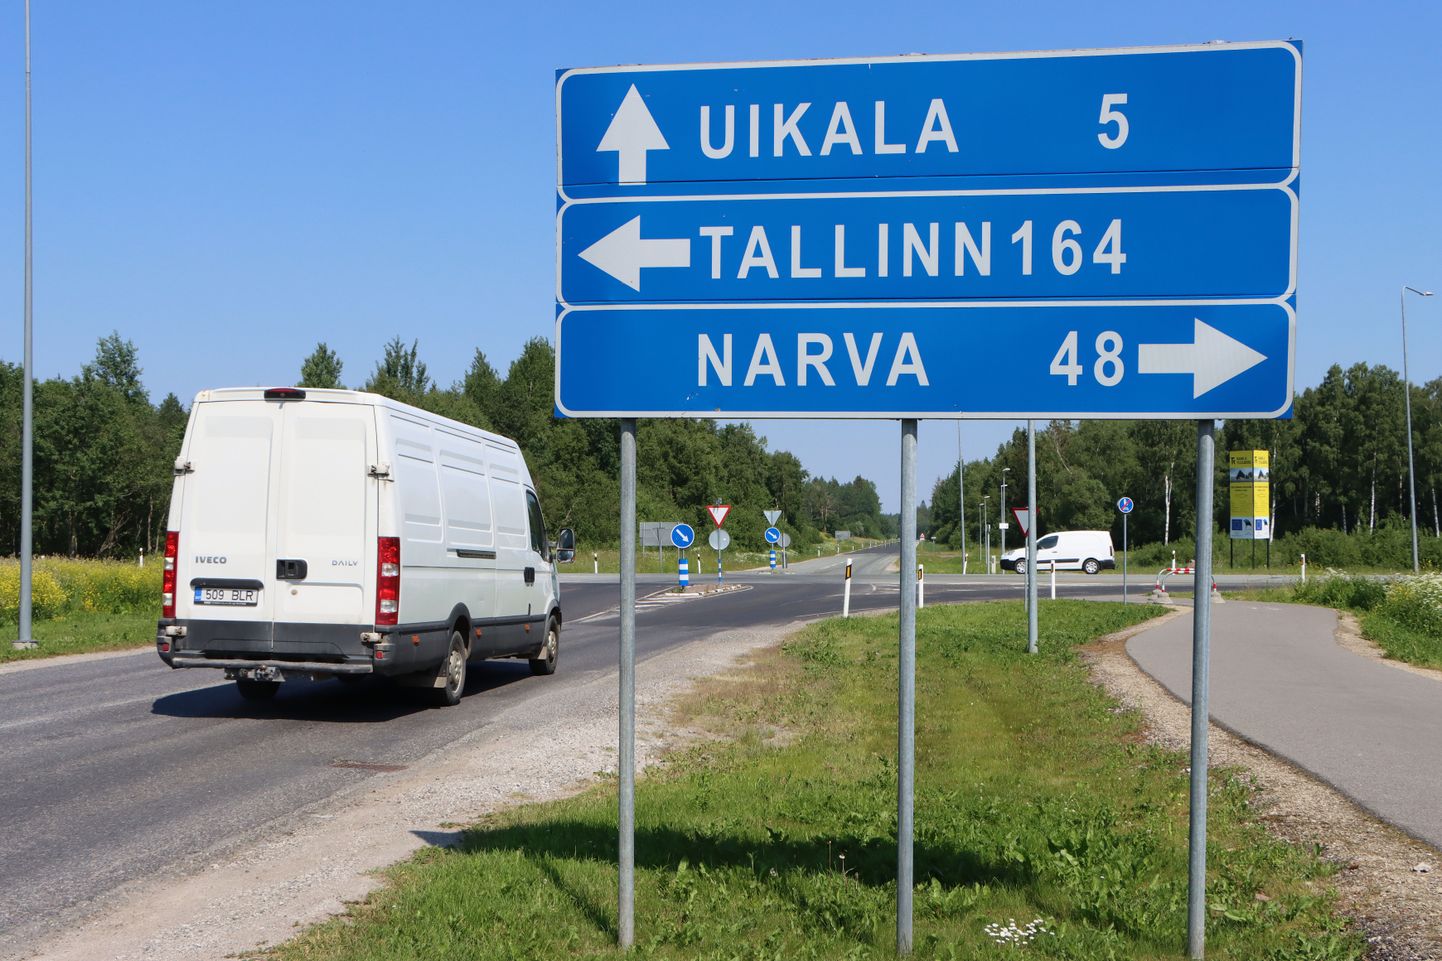 Опасный перекресток в северной части Йыхви, где с шоссе Таллинн - Нарва пересекаются улица Яама и дорога на Уйкала.